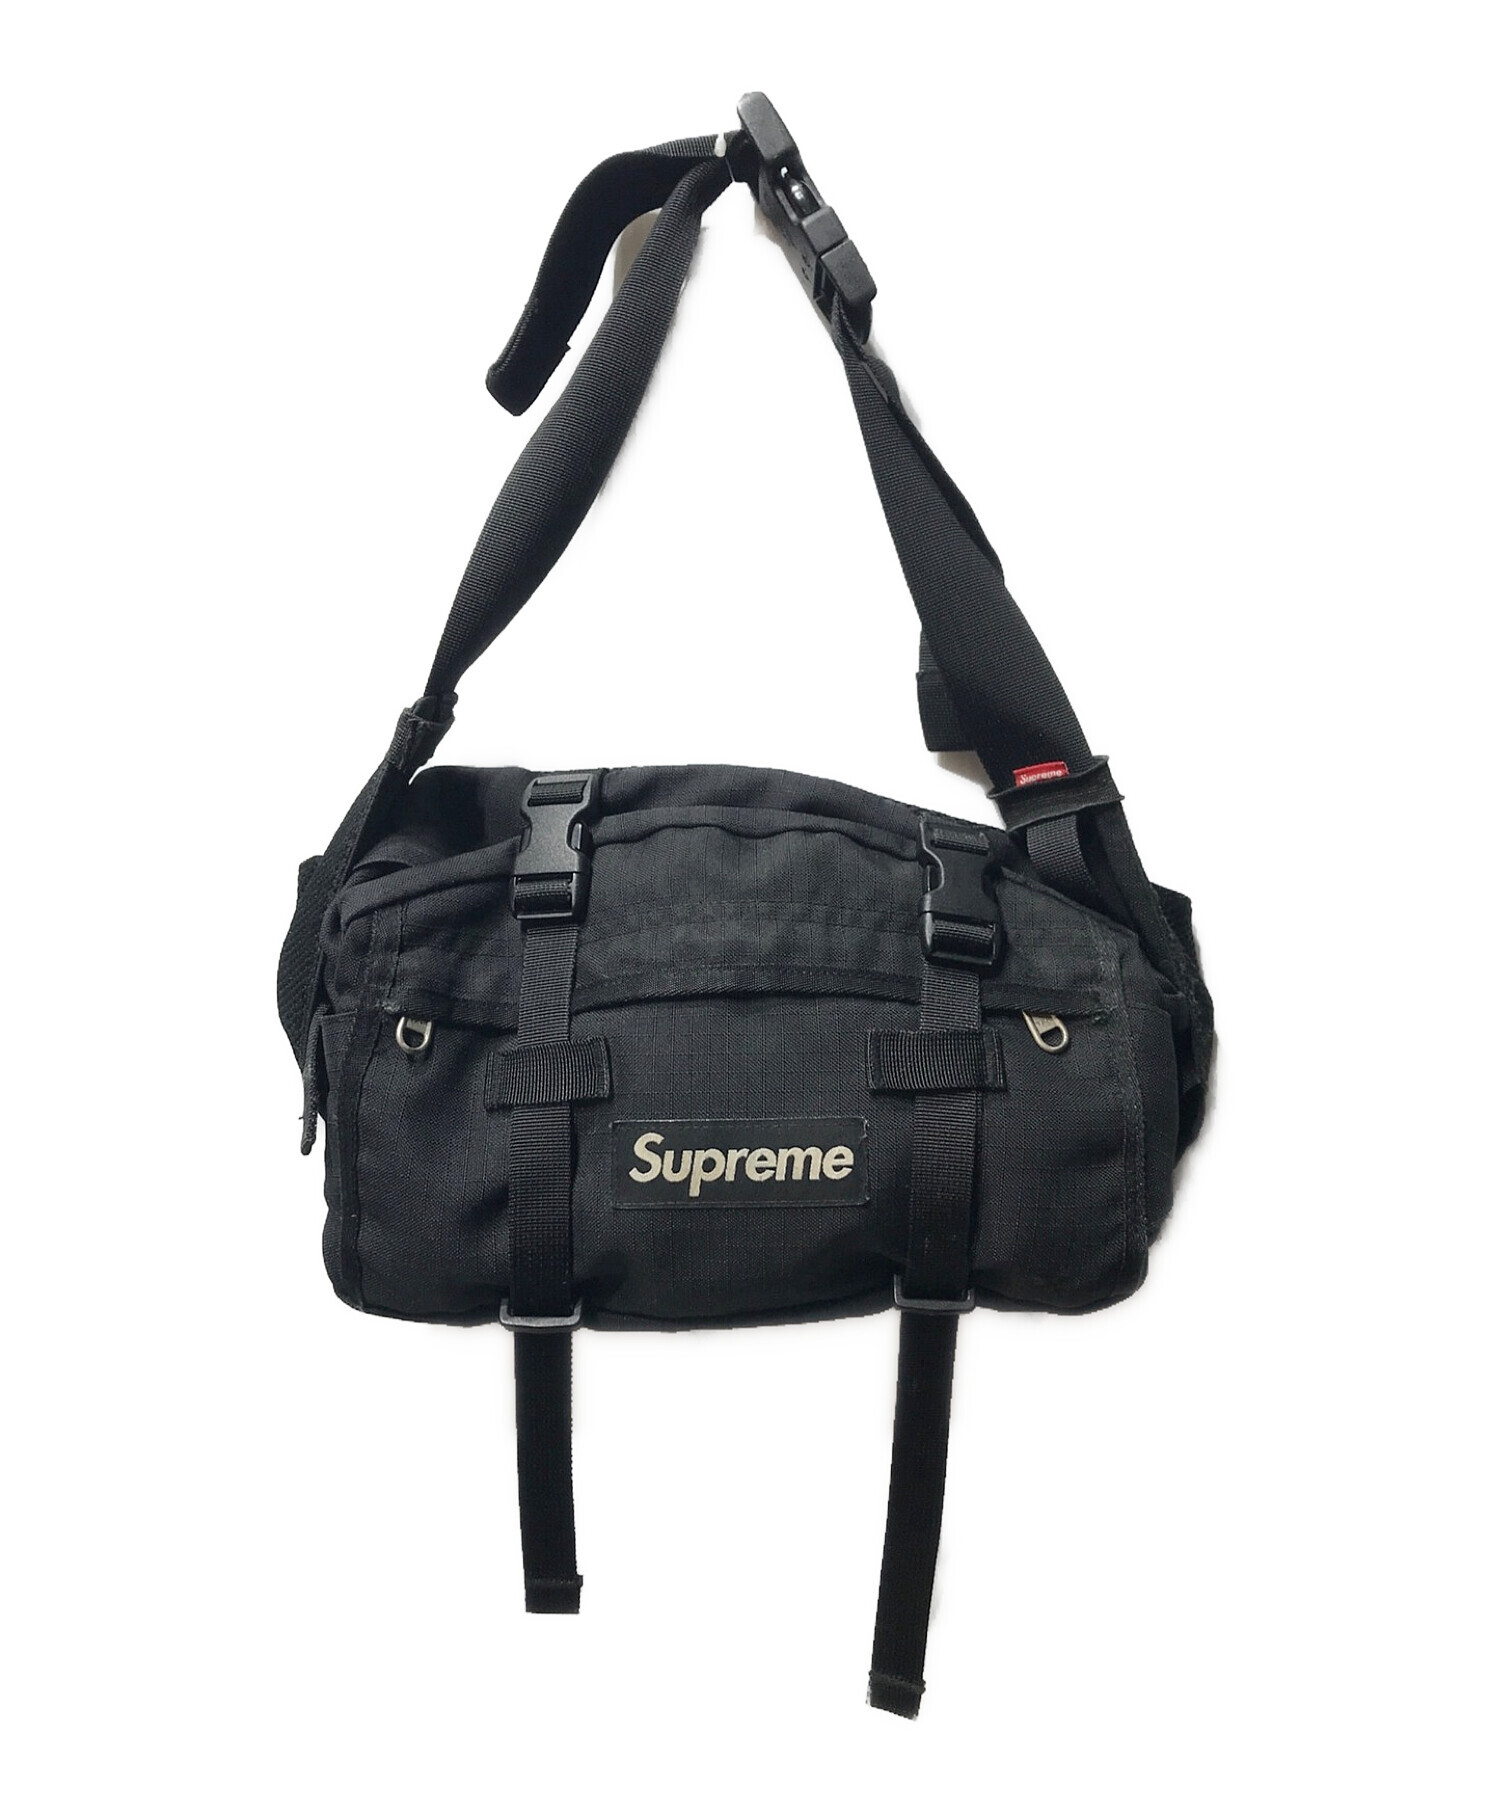 supreme waist bag black 19aw 19fw